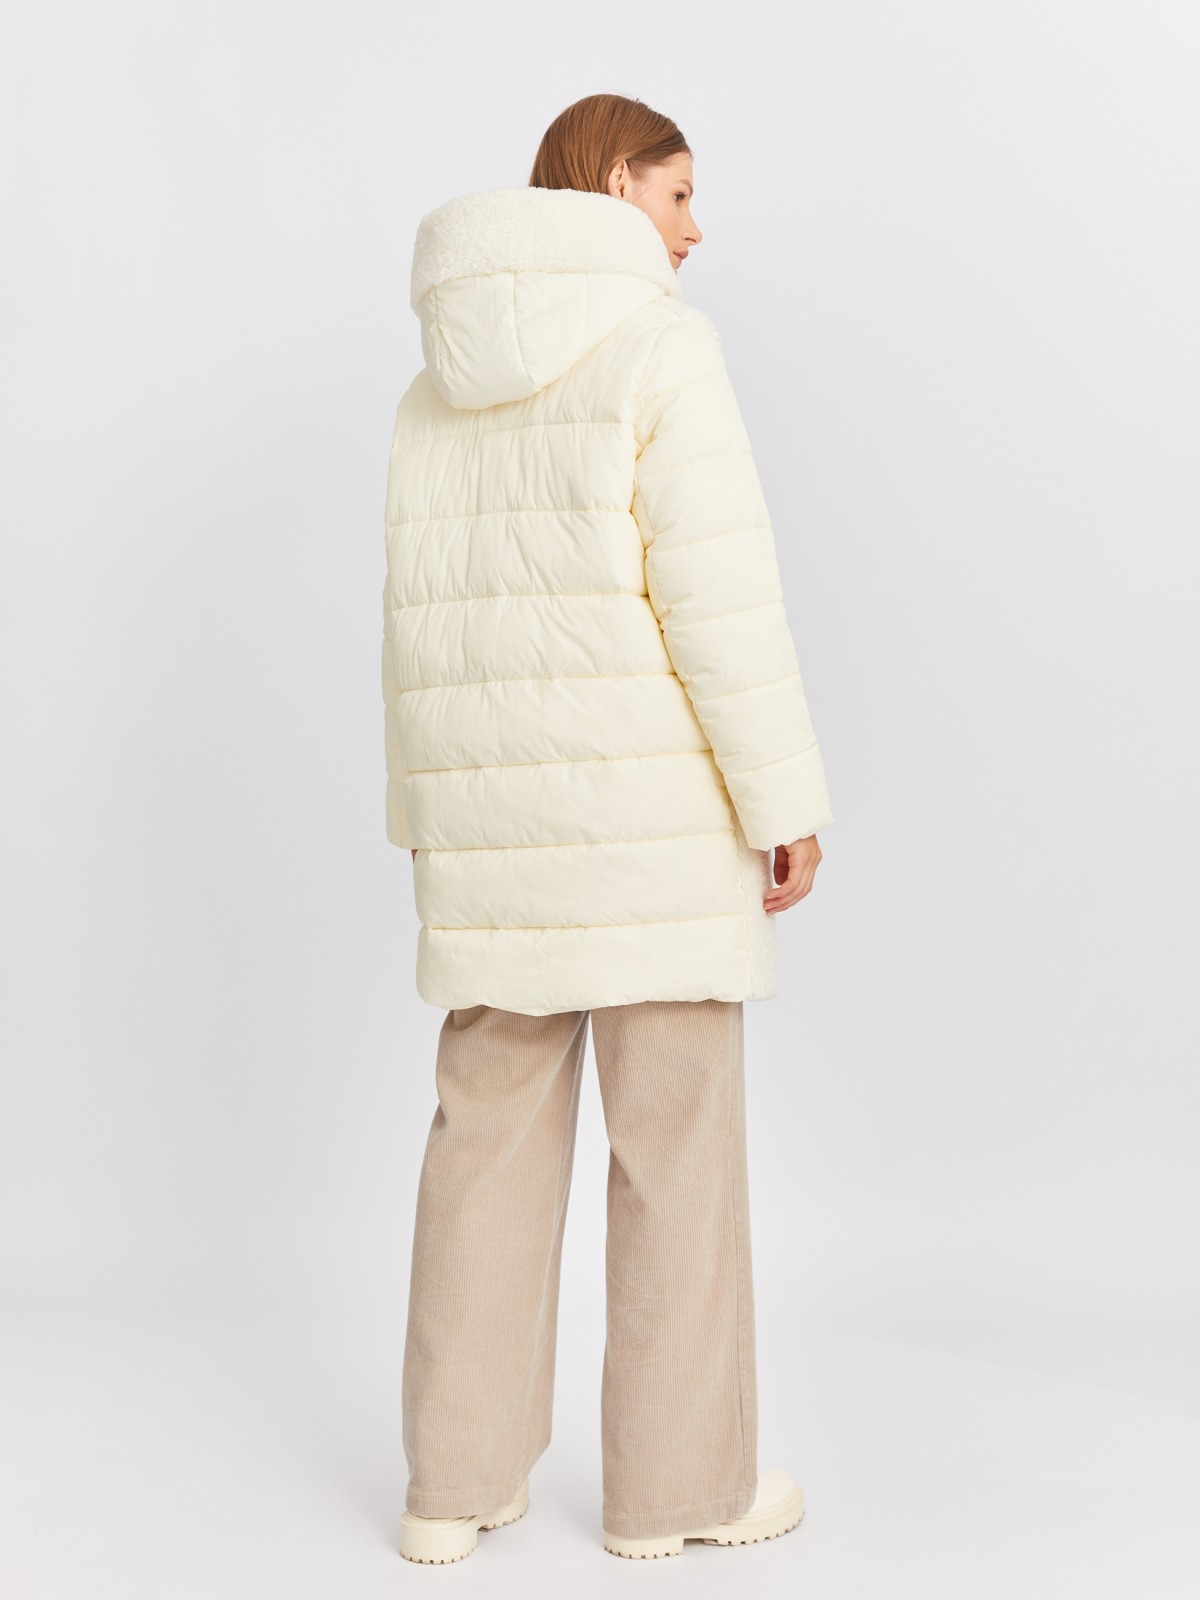 Тёплая куртка-пальто с капюшоном и отделкой из экомеха zolla 022425212164, цвет молоко, размер L - фото 6